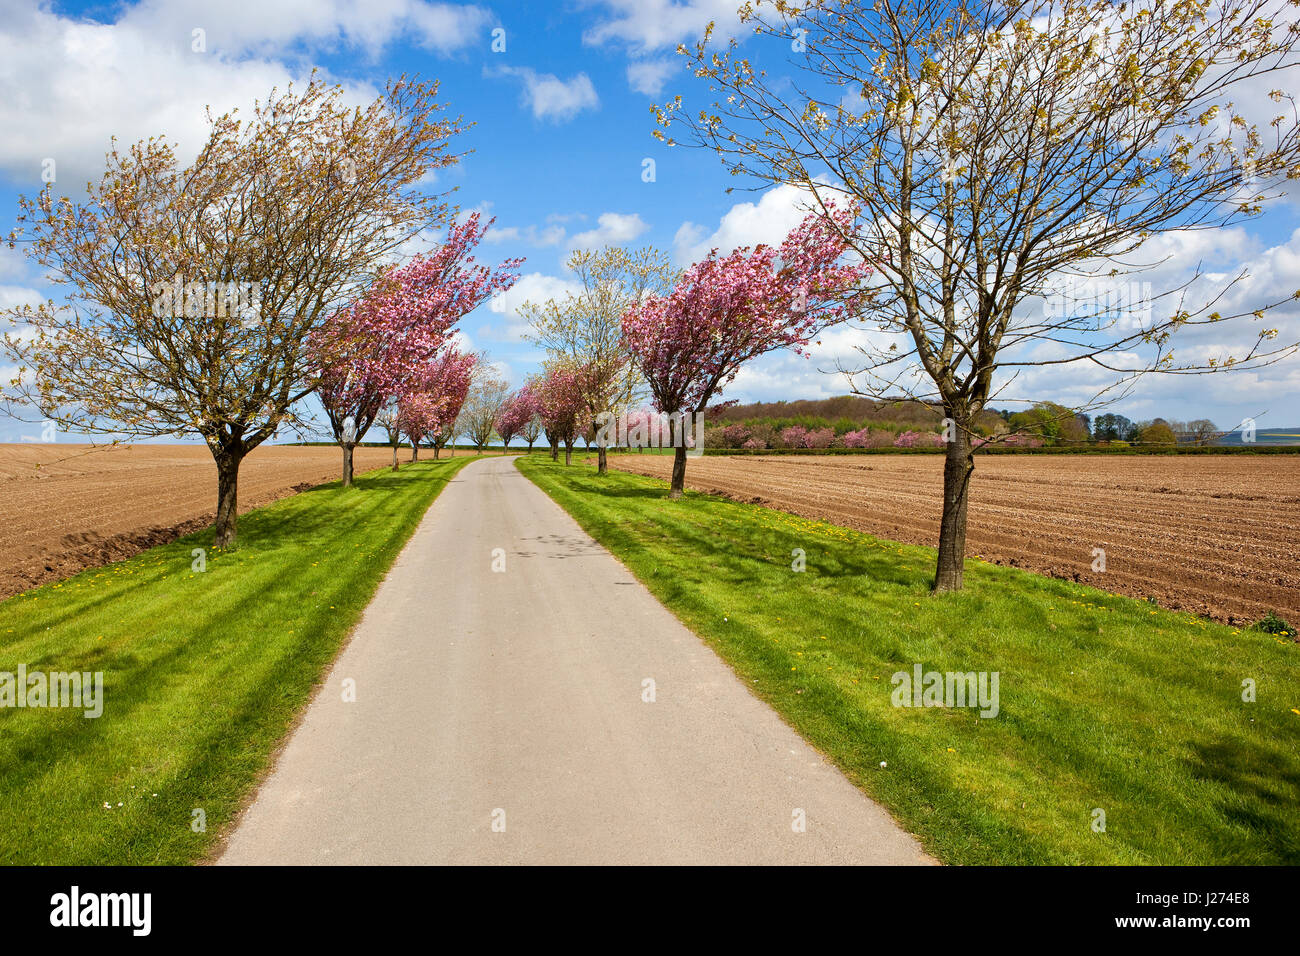 Una avenida de árboles de cerezo en flor rosa y blanco hierba verges y una pista junto a la granja recién hechas, potato filas bajo un cielo nublado en springtim azul Foto de stock